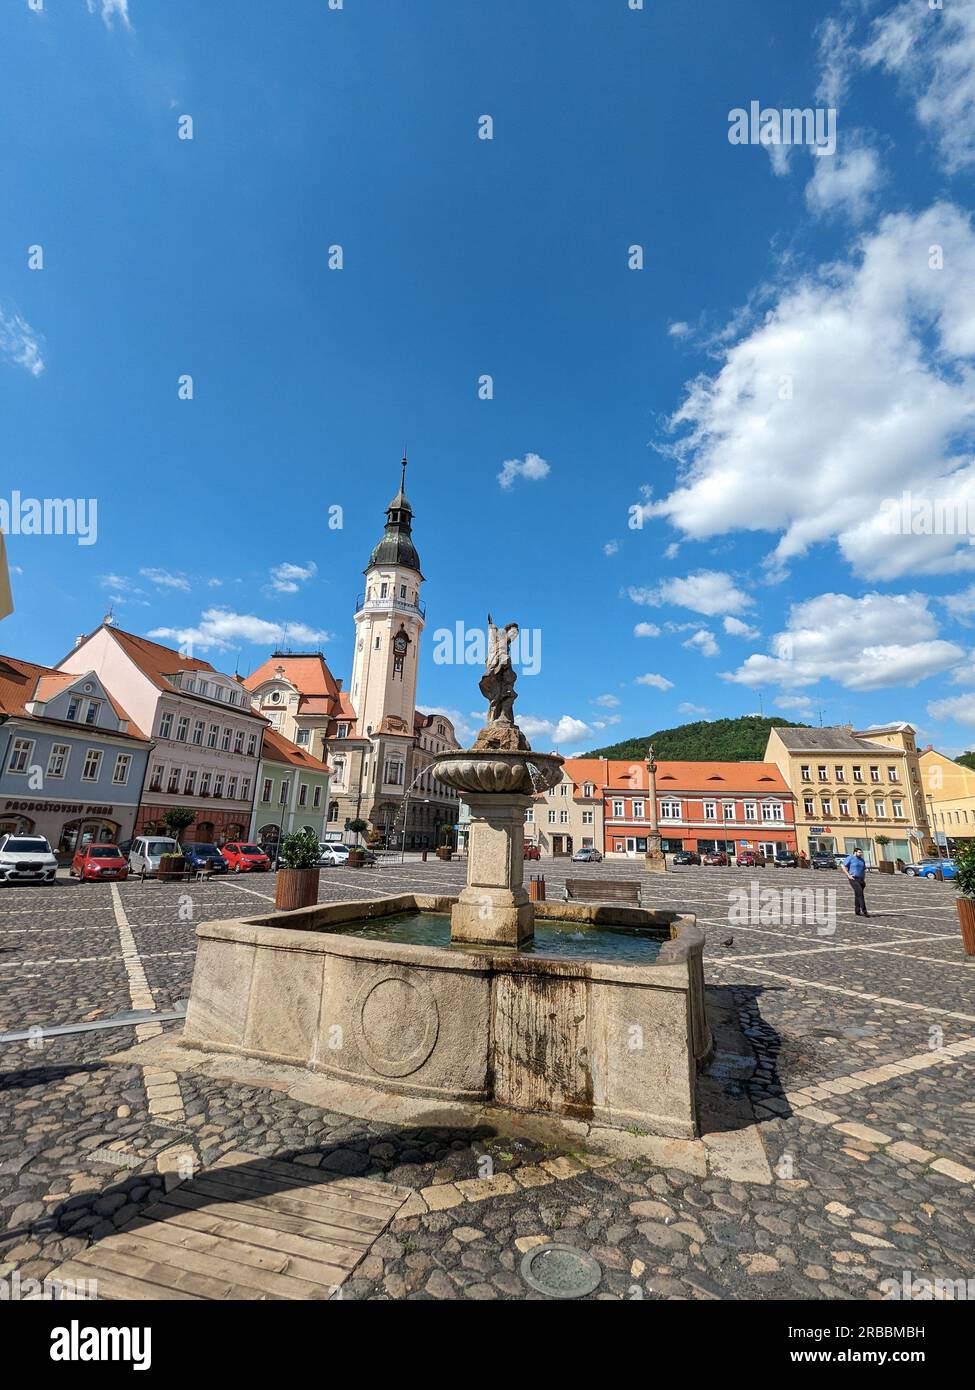 Bilina, repubblica Ceca, centro storico con fontane e piazza in pietra ciottolosa, chiese e castello sopra la città vecchia, panorama della Boemia settentrionale Foto Stock